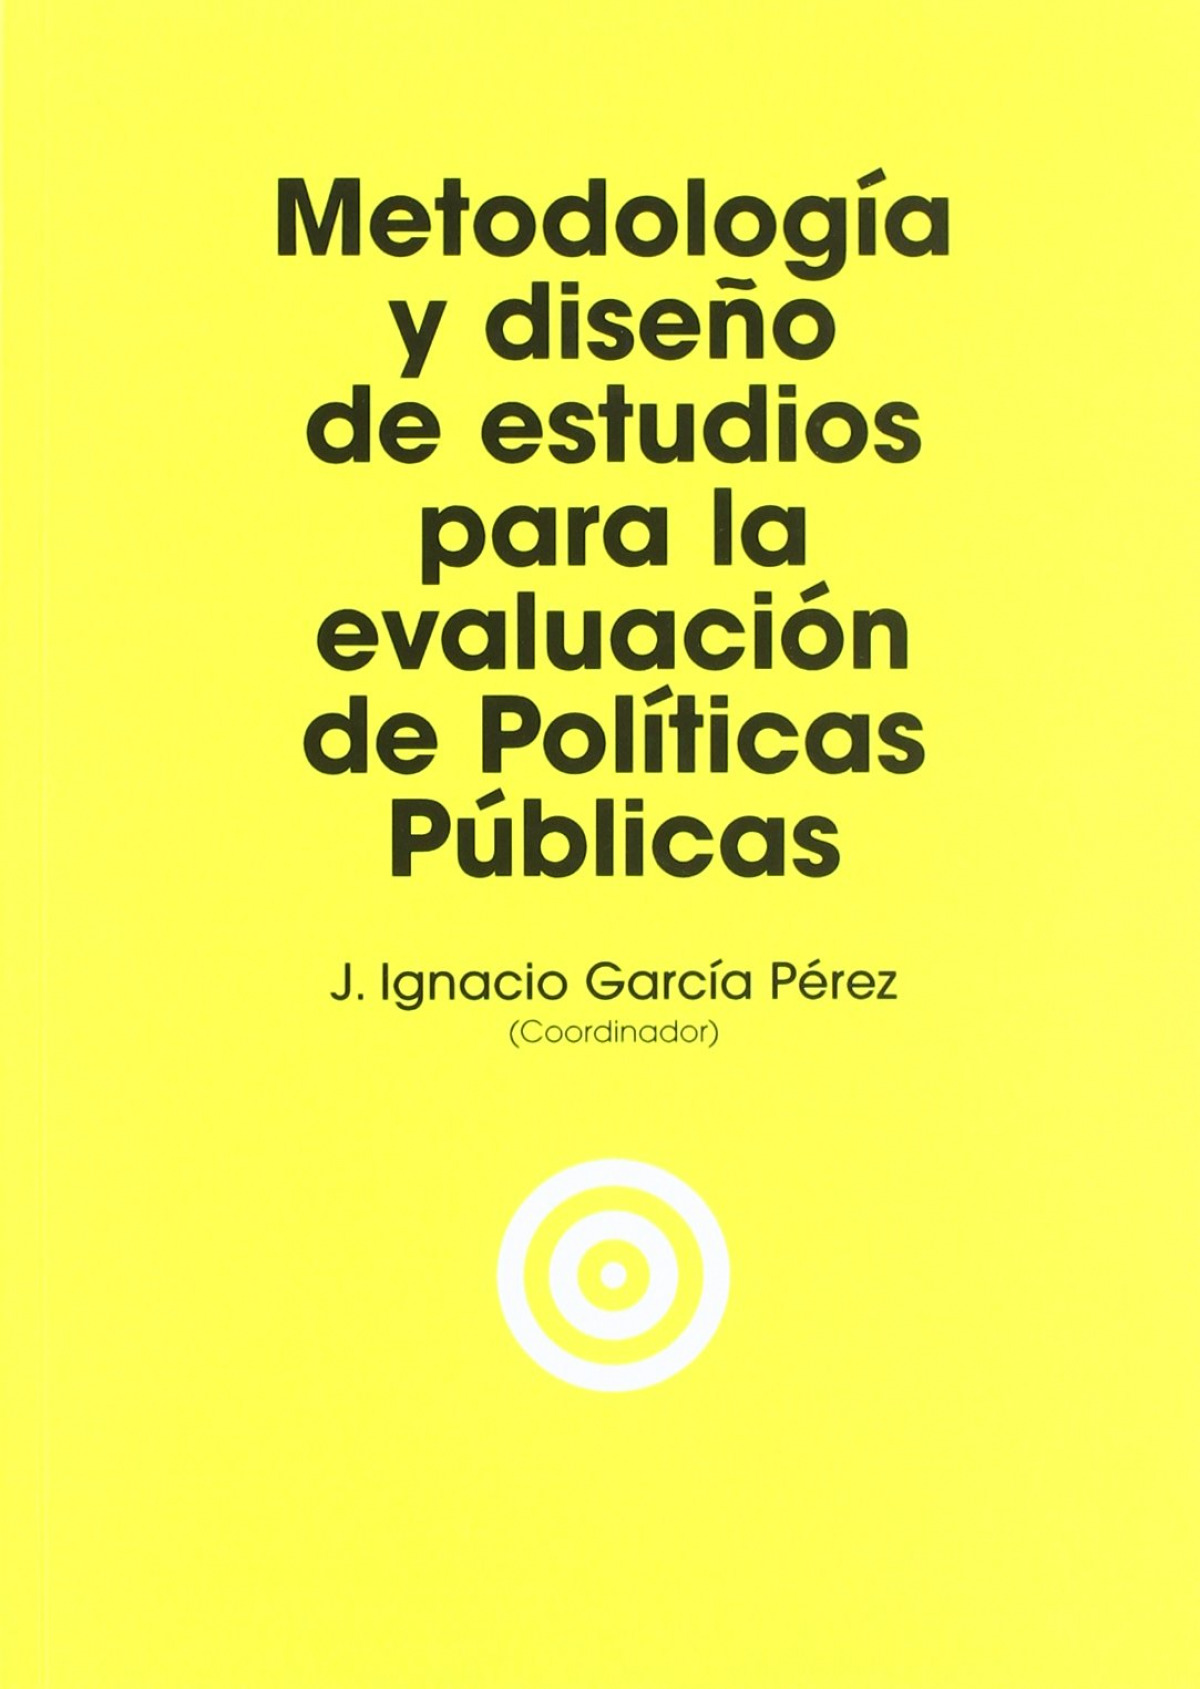 Metodologia y diseÑo evaluacion politicas publicas - Garcia, Ignacio